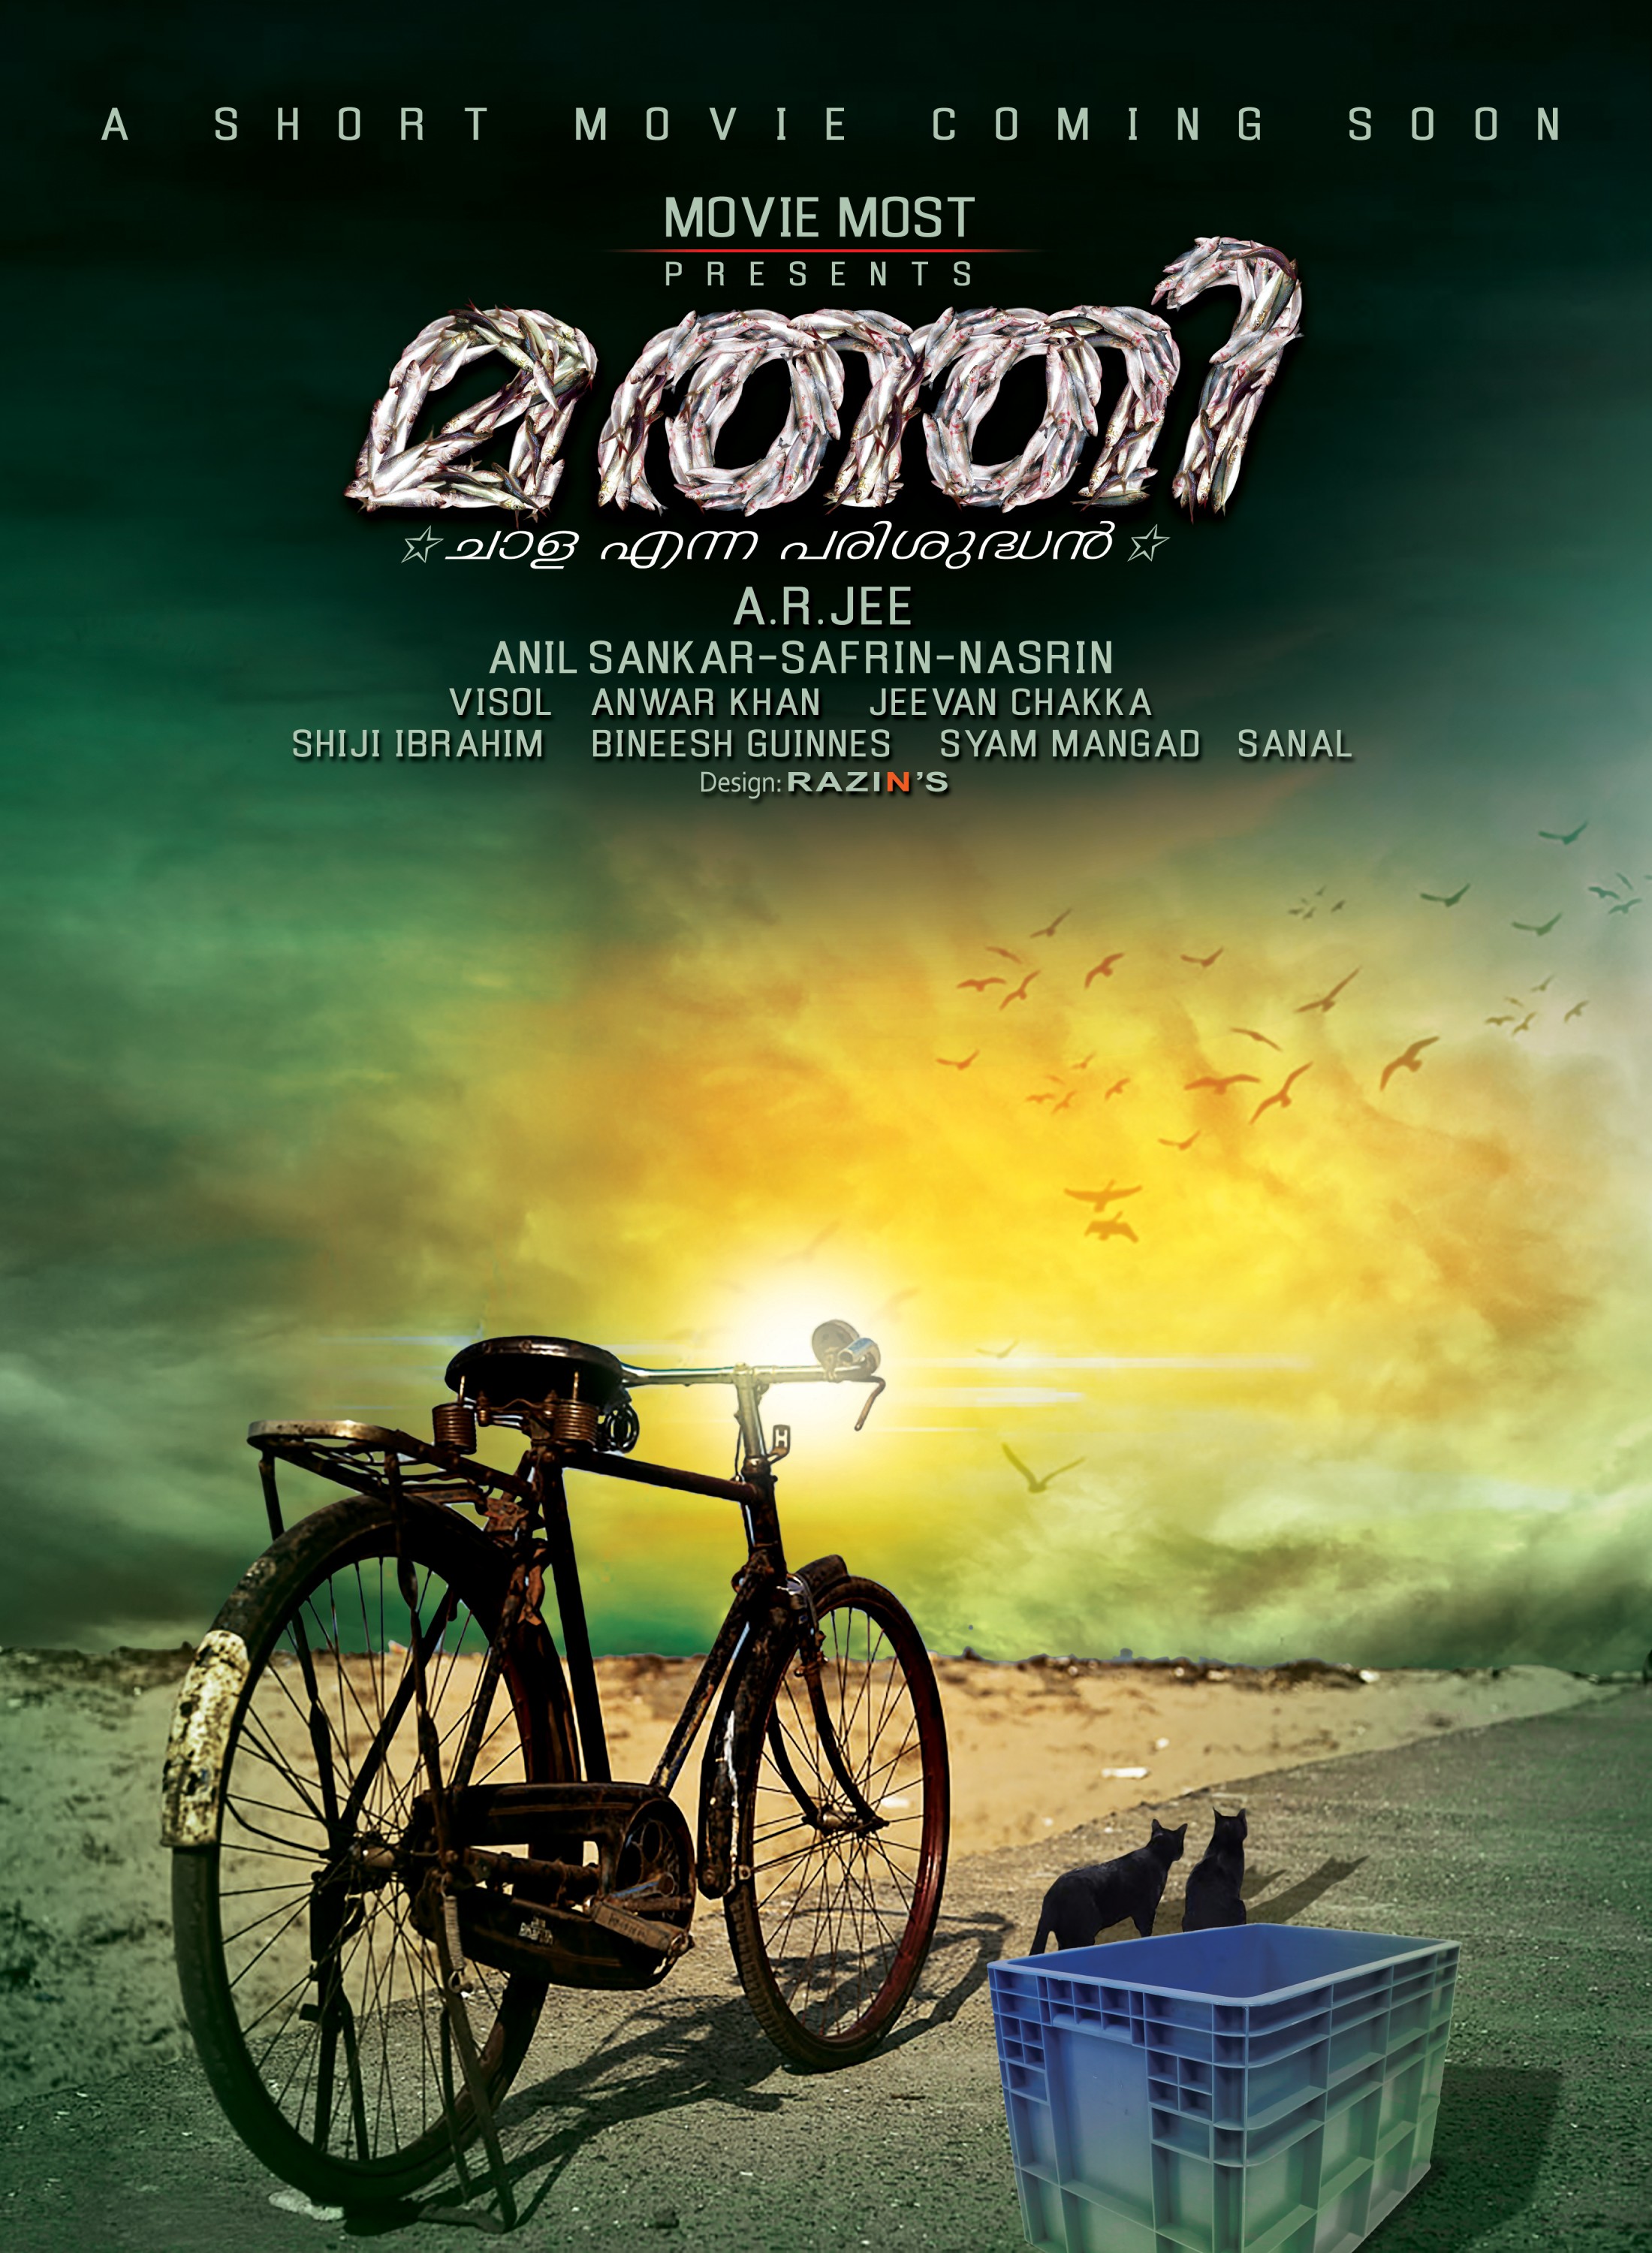 Mega Sized Movie Poster Image for Maththi